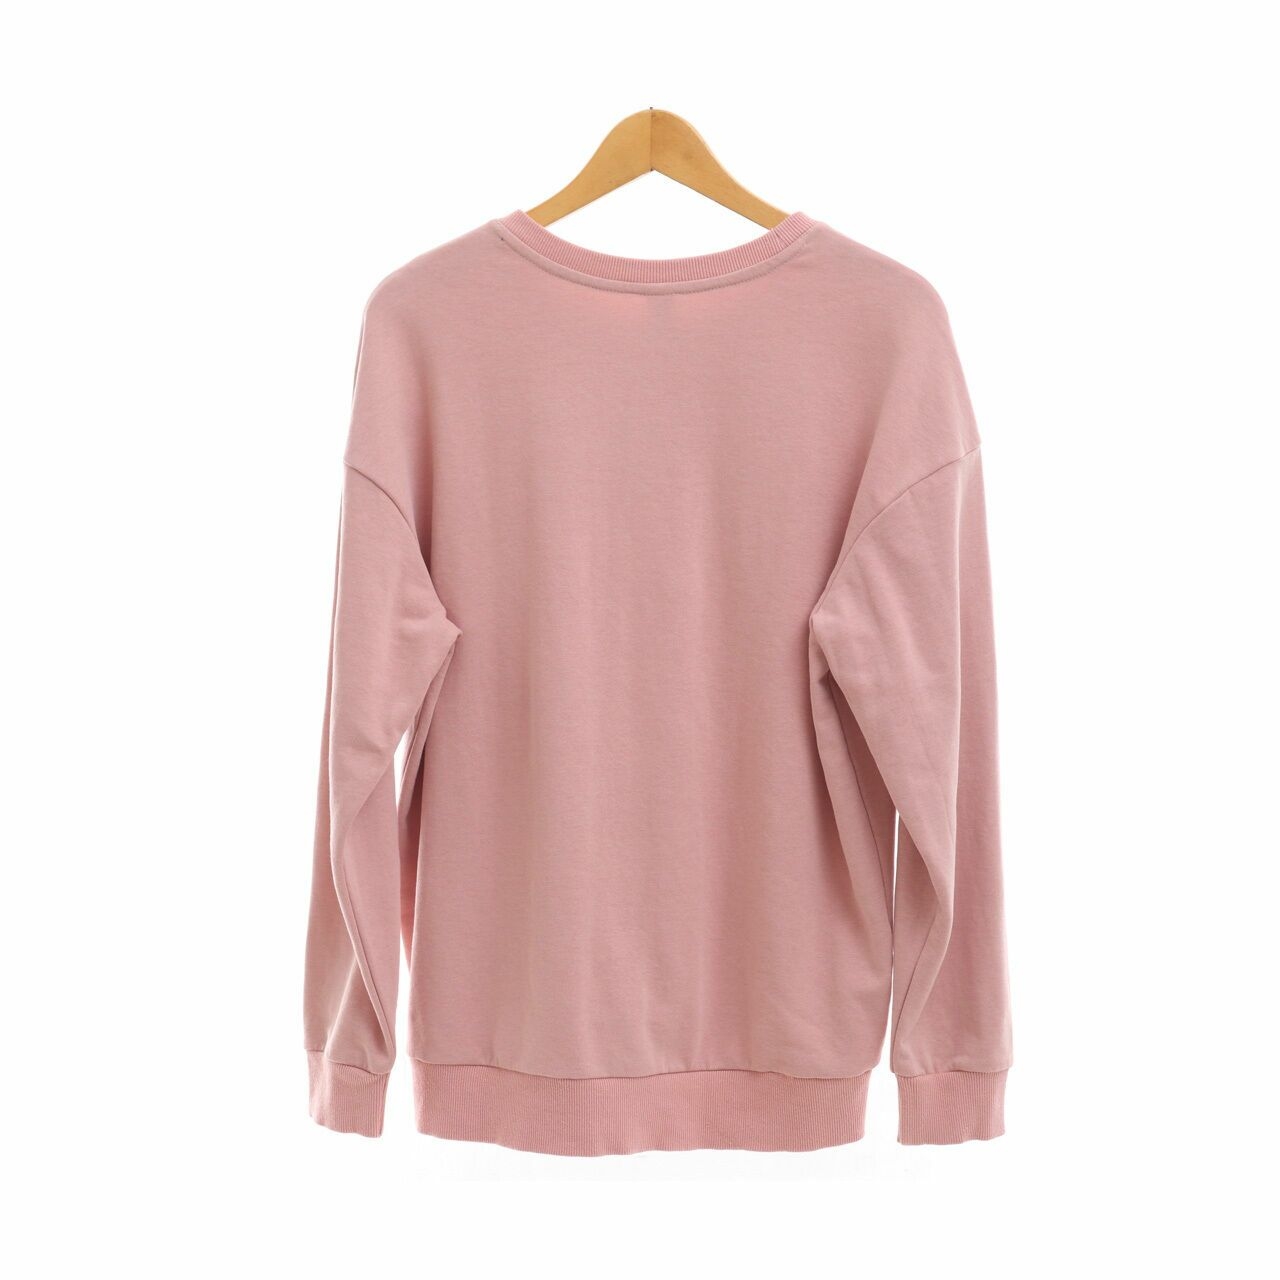 Miniletics Dusty Pink Sweater